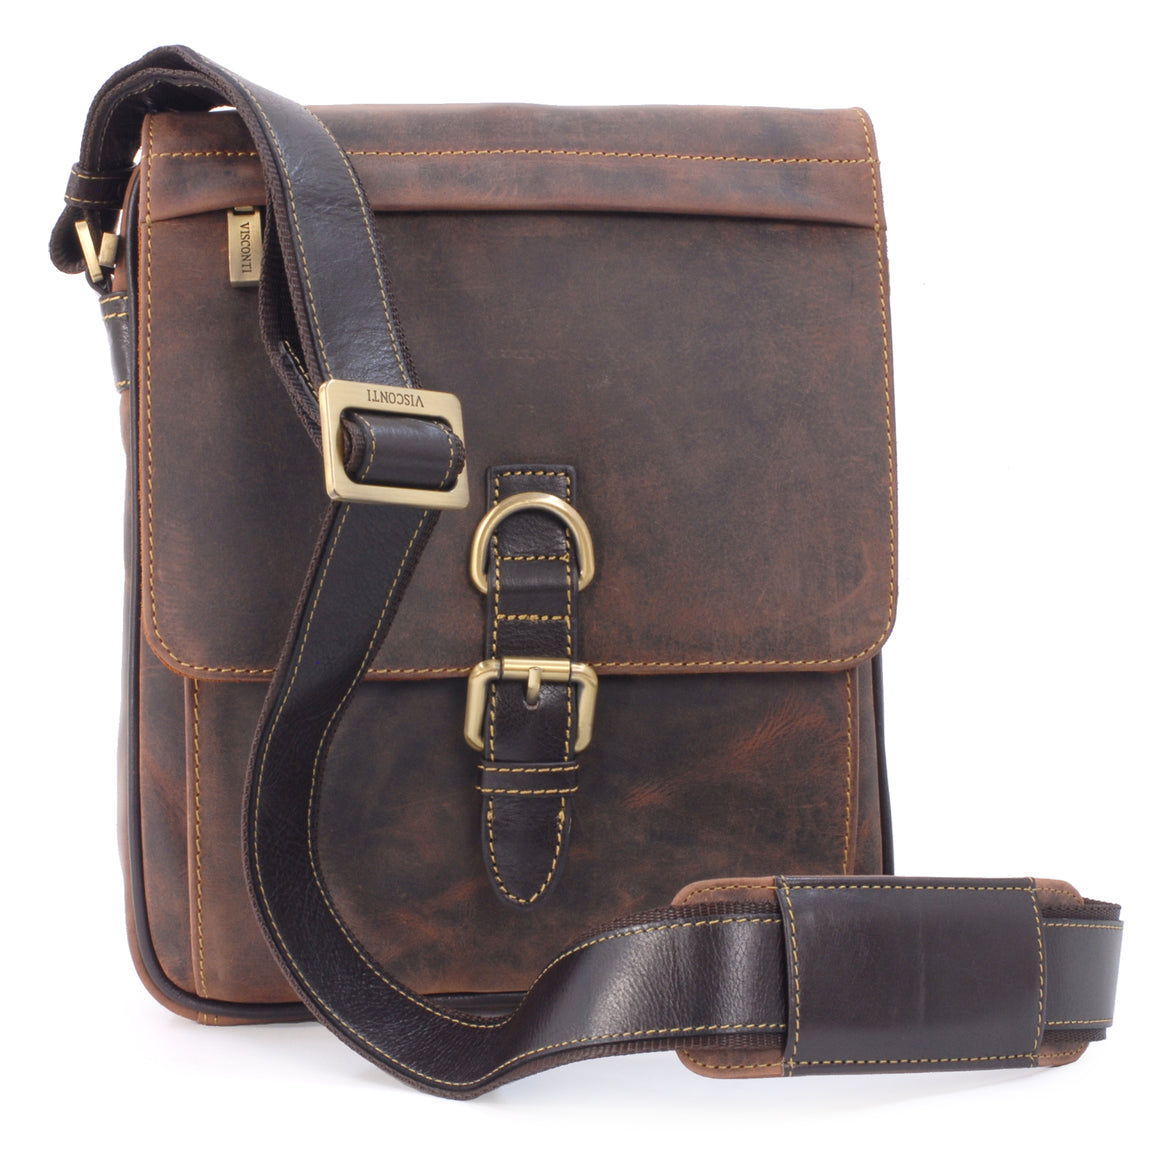 Visconti Leather Bags & Wallets | The Real Handbag Shop UK